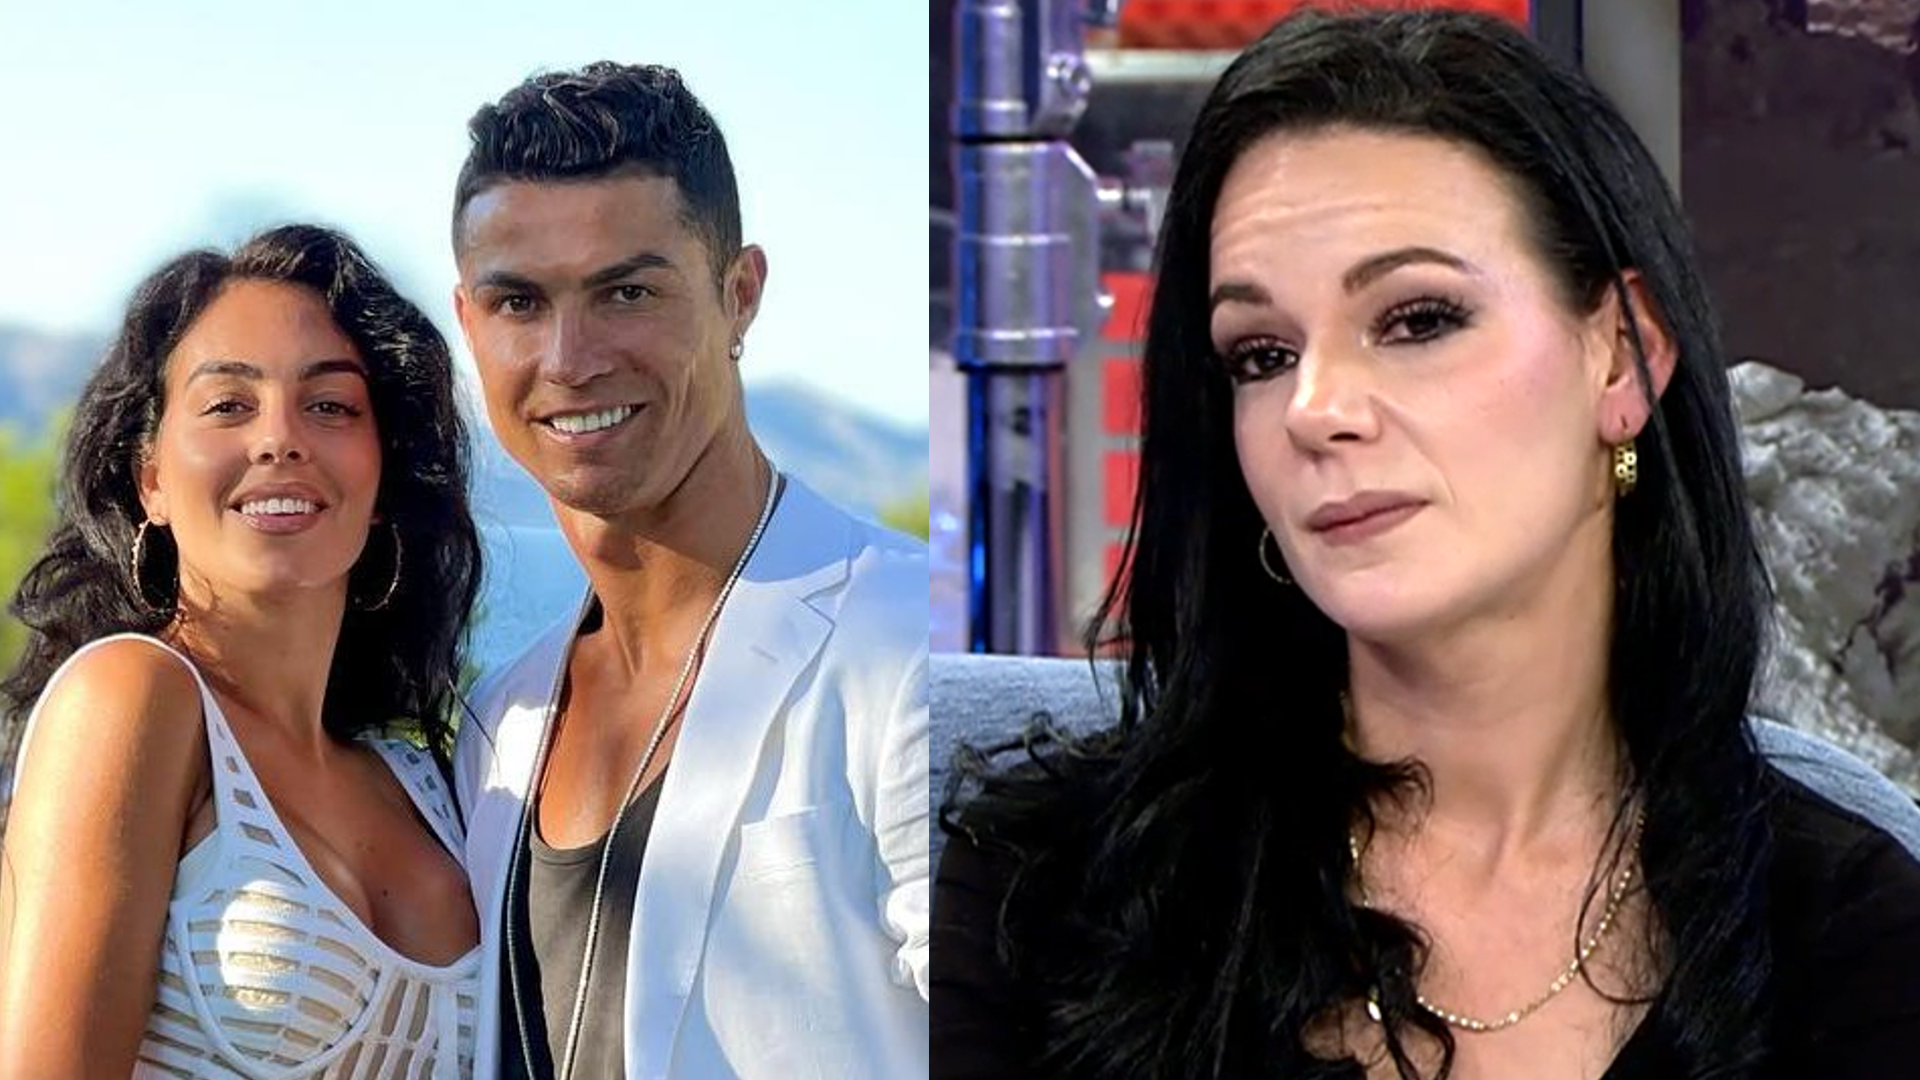 La esposa de Cristiano Ronaldo, Georgina Rodríguez, se niega ayudar a una  integrante de su familia